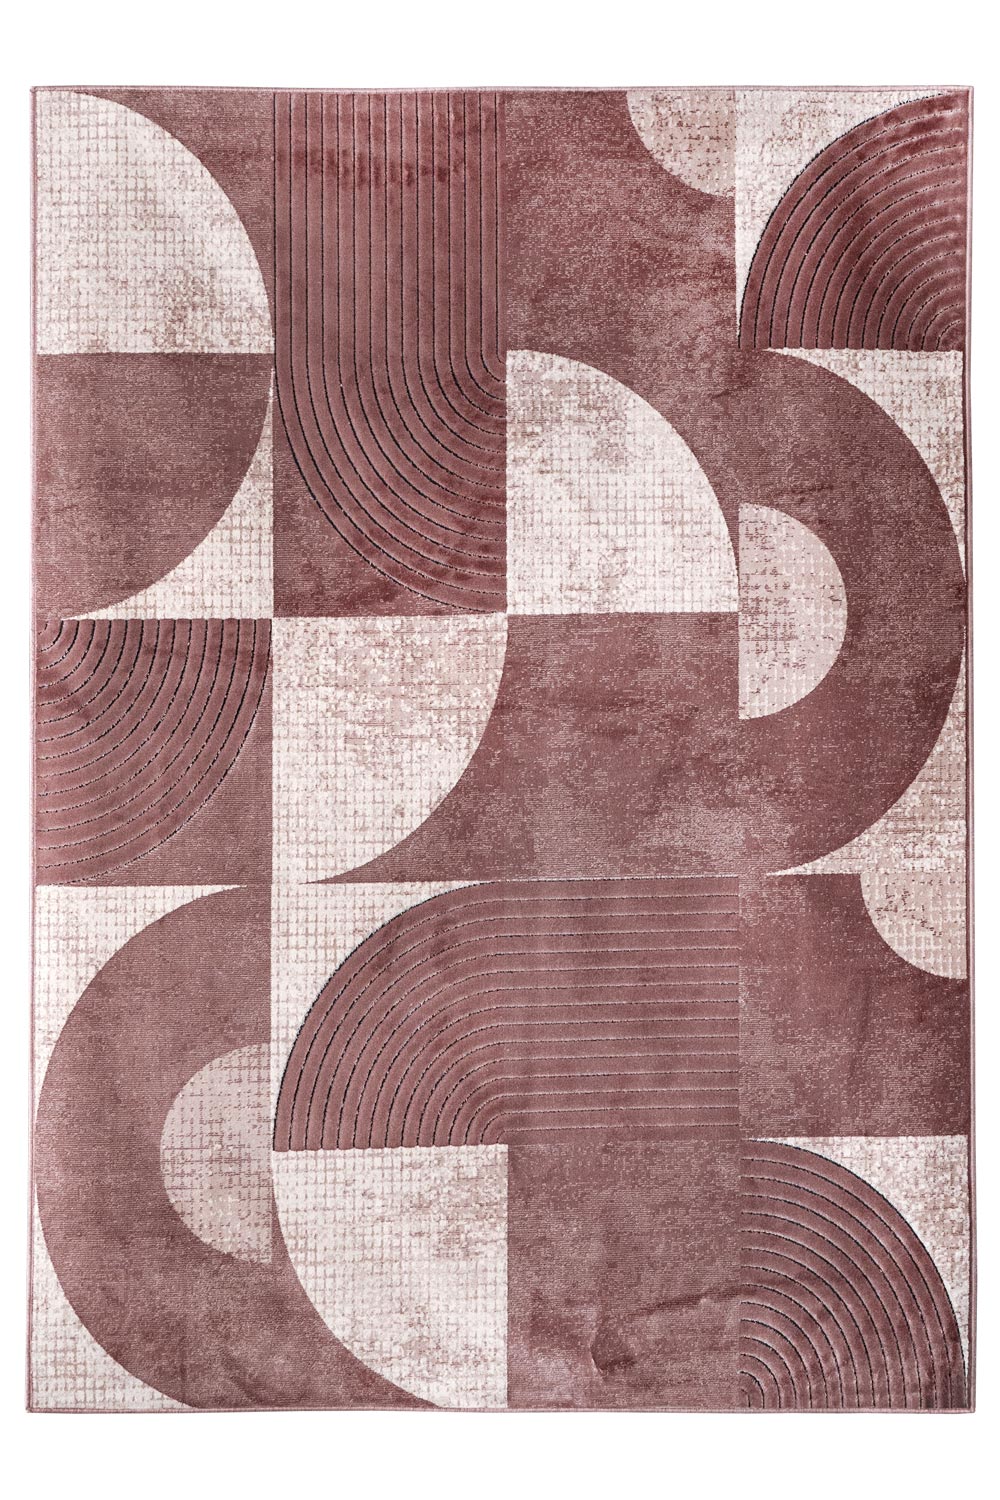 Kusový koberec GIRONA 2755/142 Peach 140x200 cm